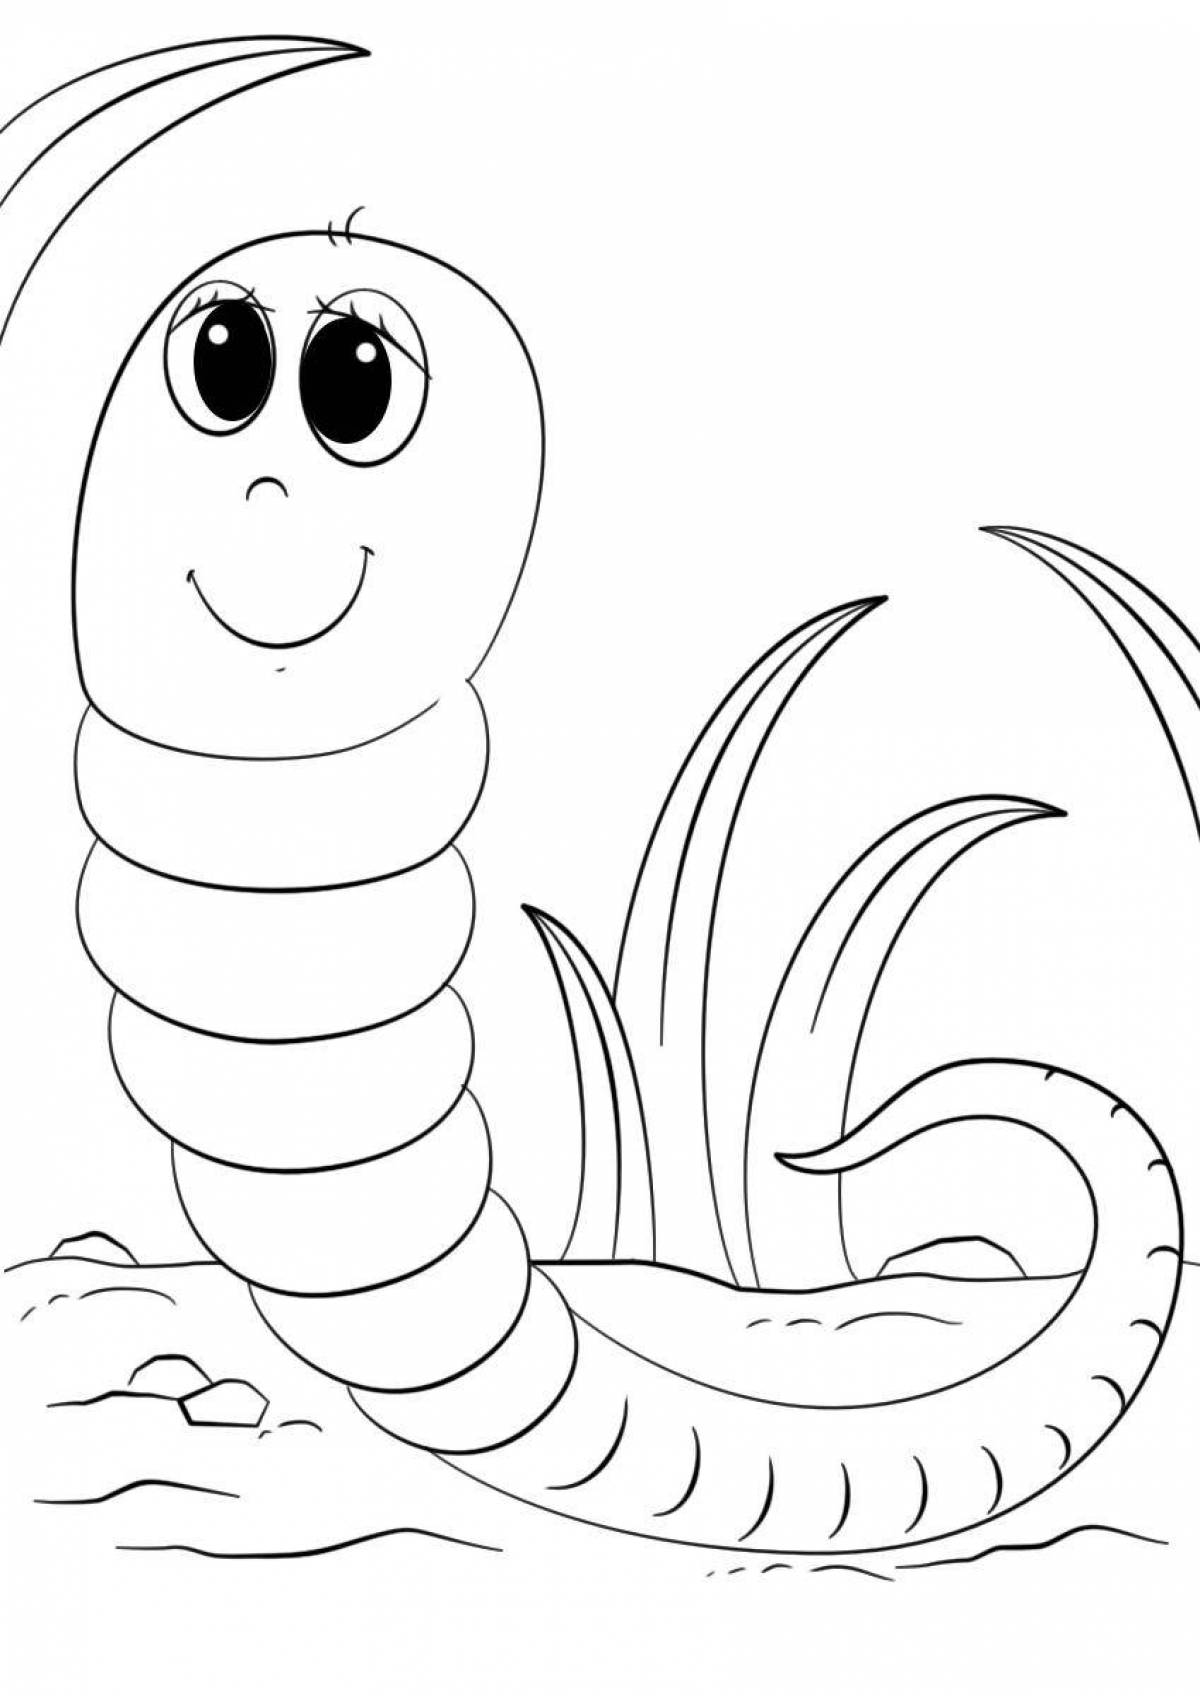 Игривая страница раскраски червя для детей